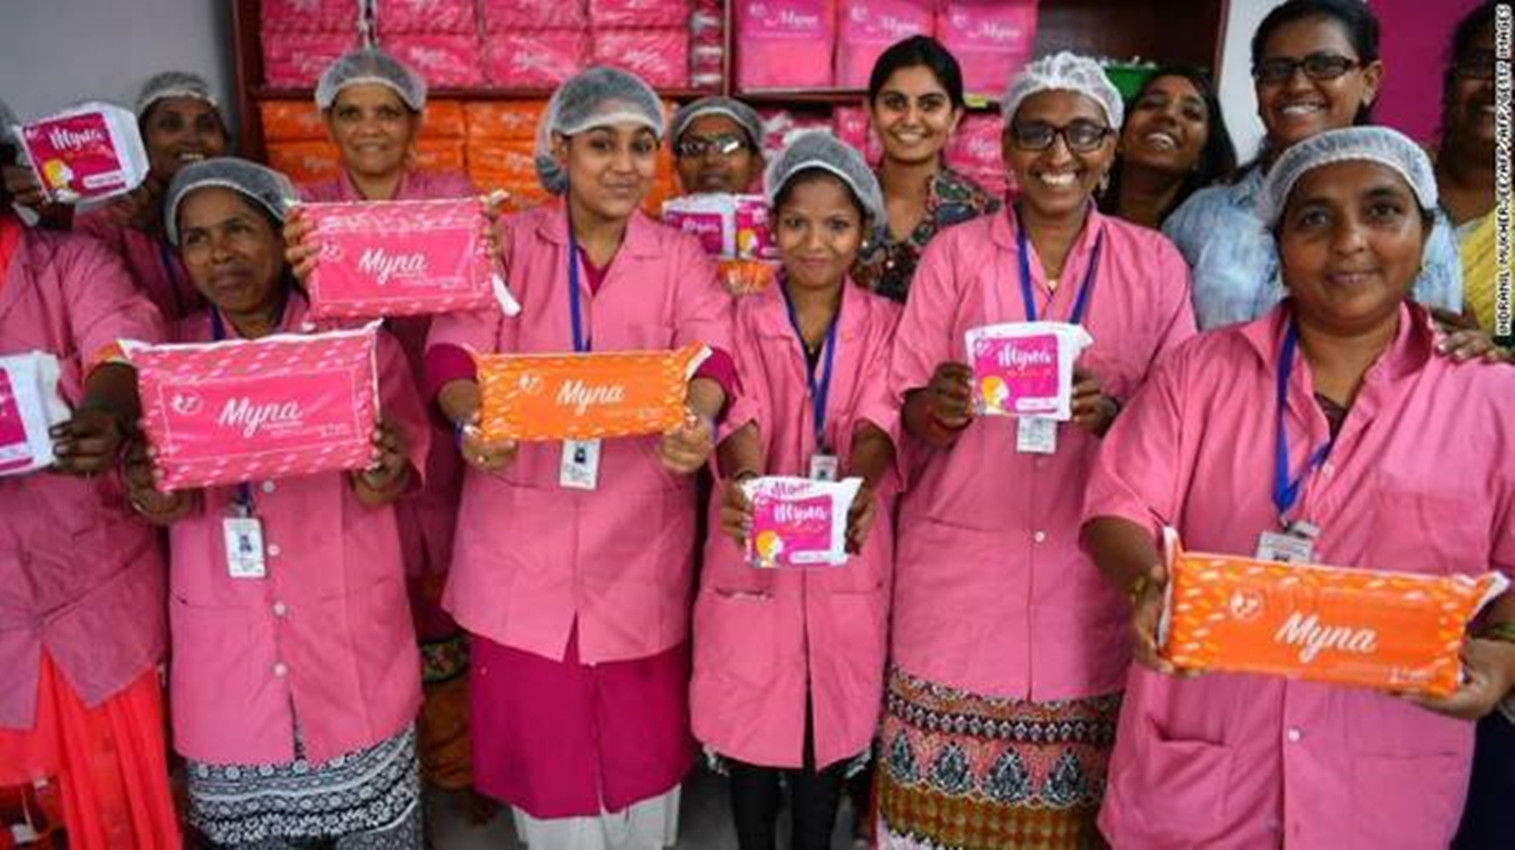 印度宣布取消卫生巾进口关税,高额关税导致女